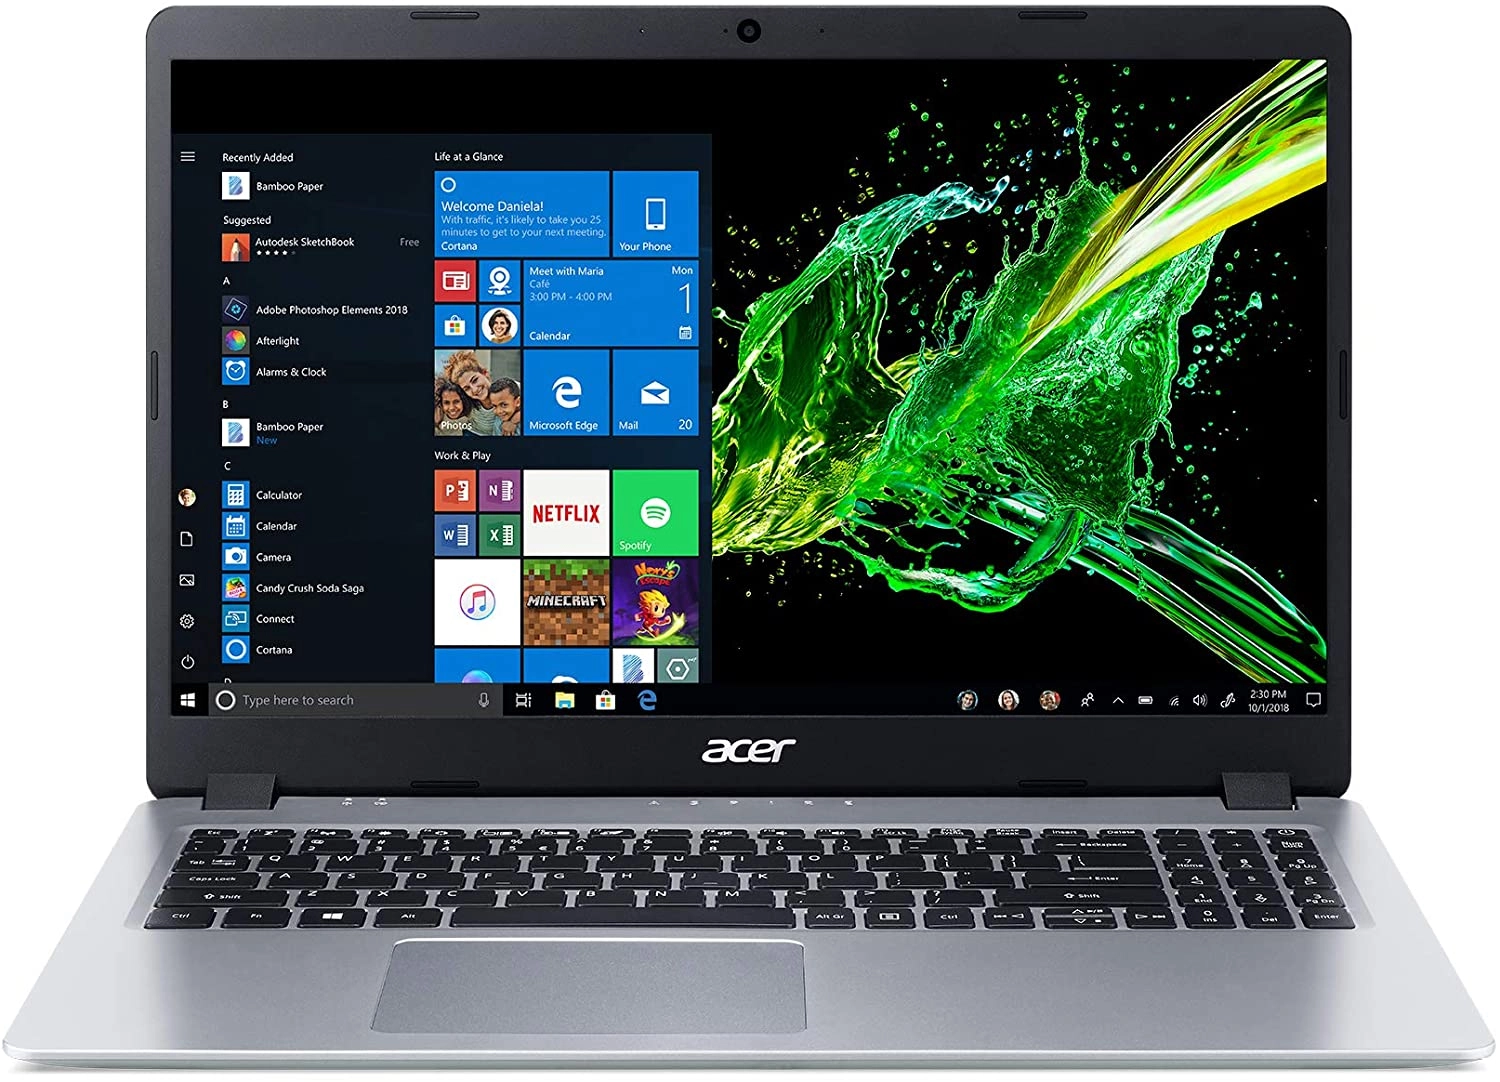 Acer A515-43-R19L laptop image